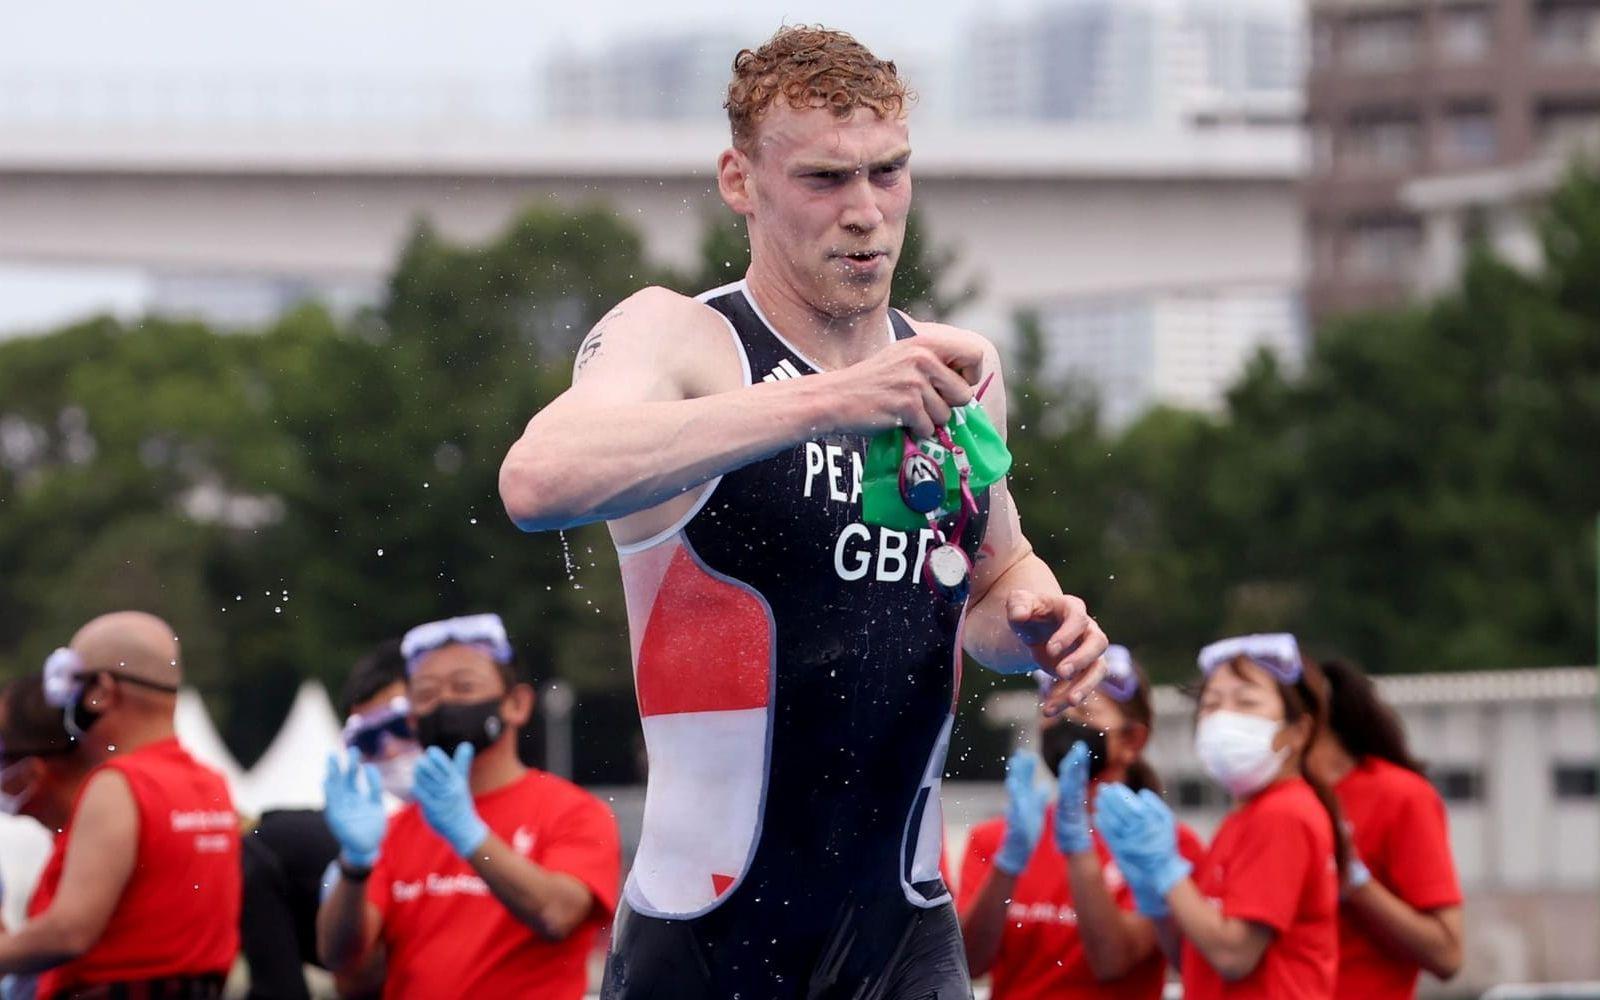 Den brittiske paraatleten var inblandad i en allvarlig cykelolycka.